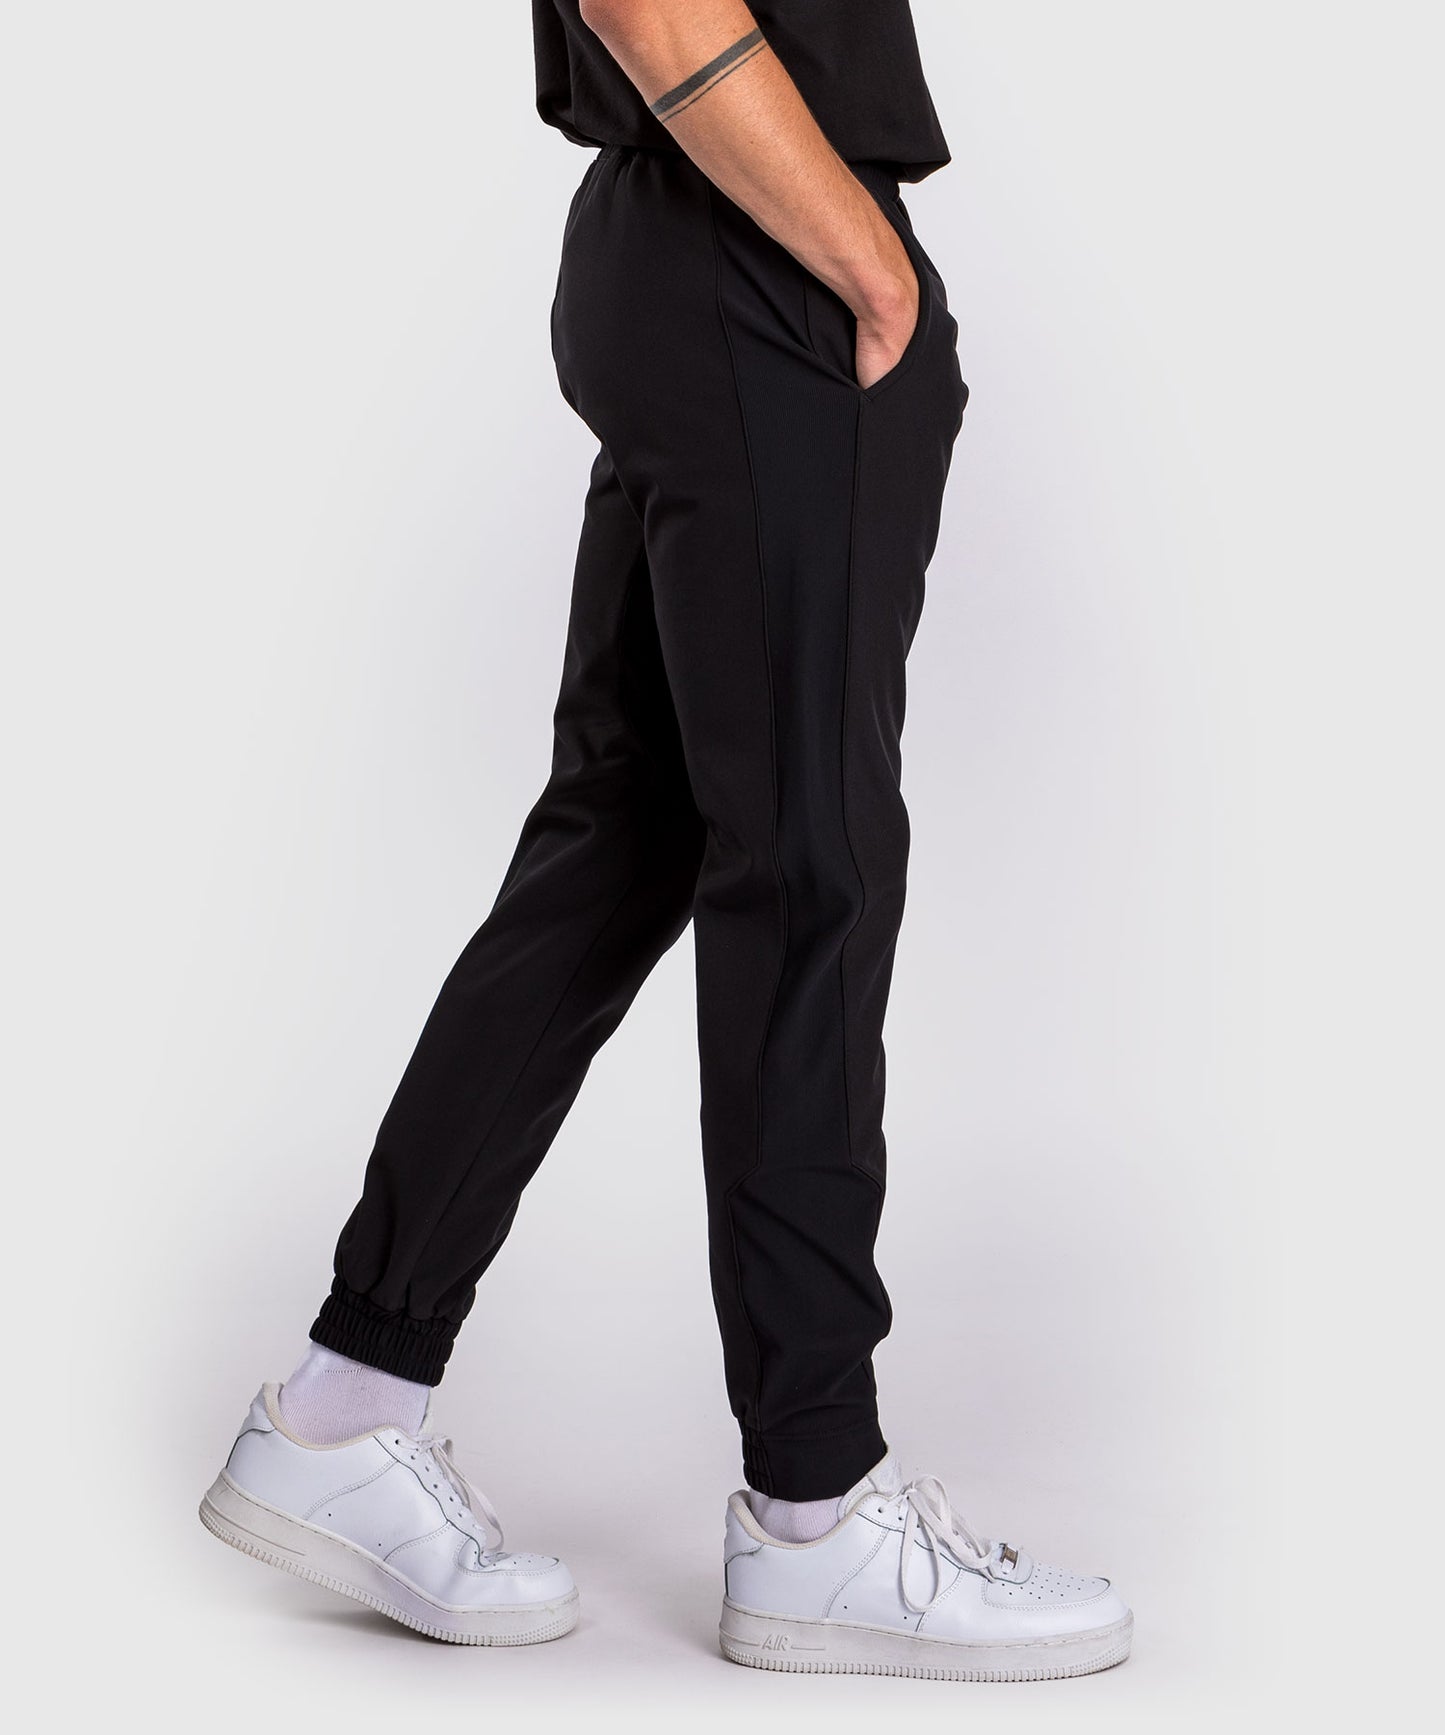 Pantalon de jogging Venum Laser 3.0 - Noir